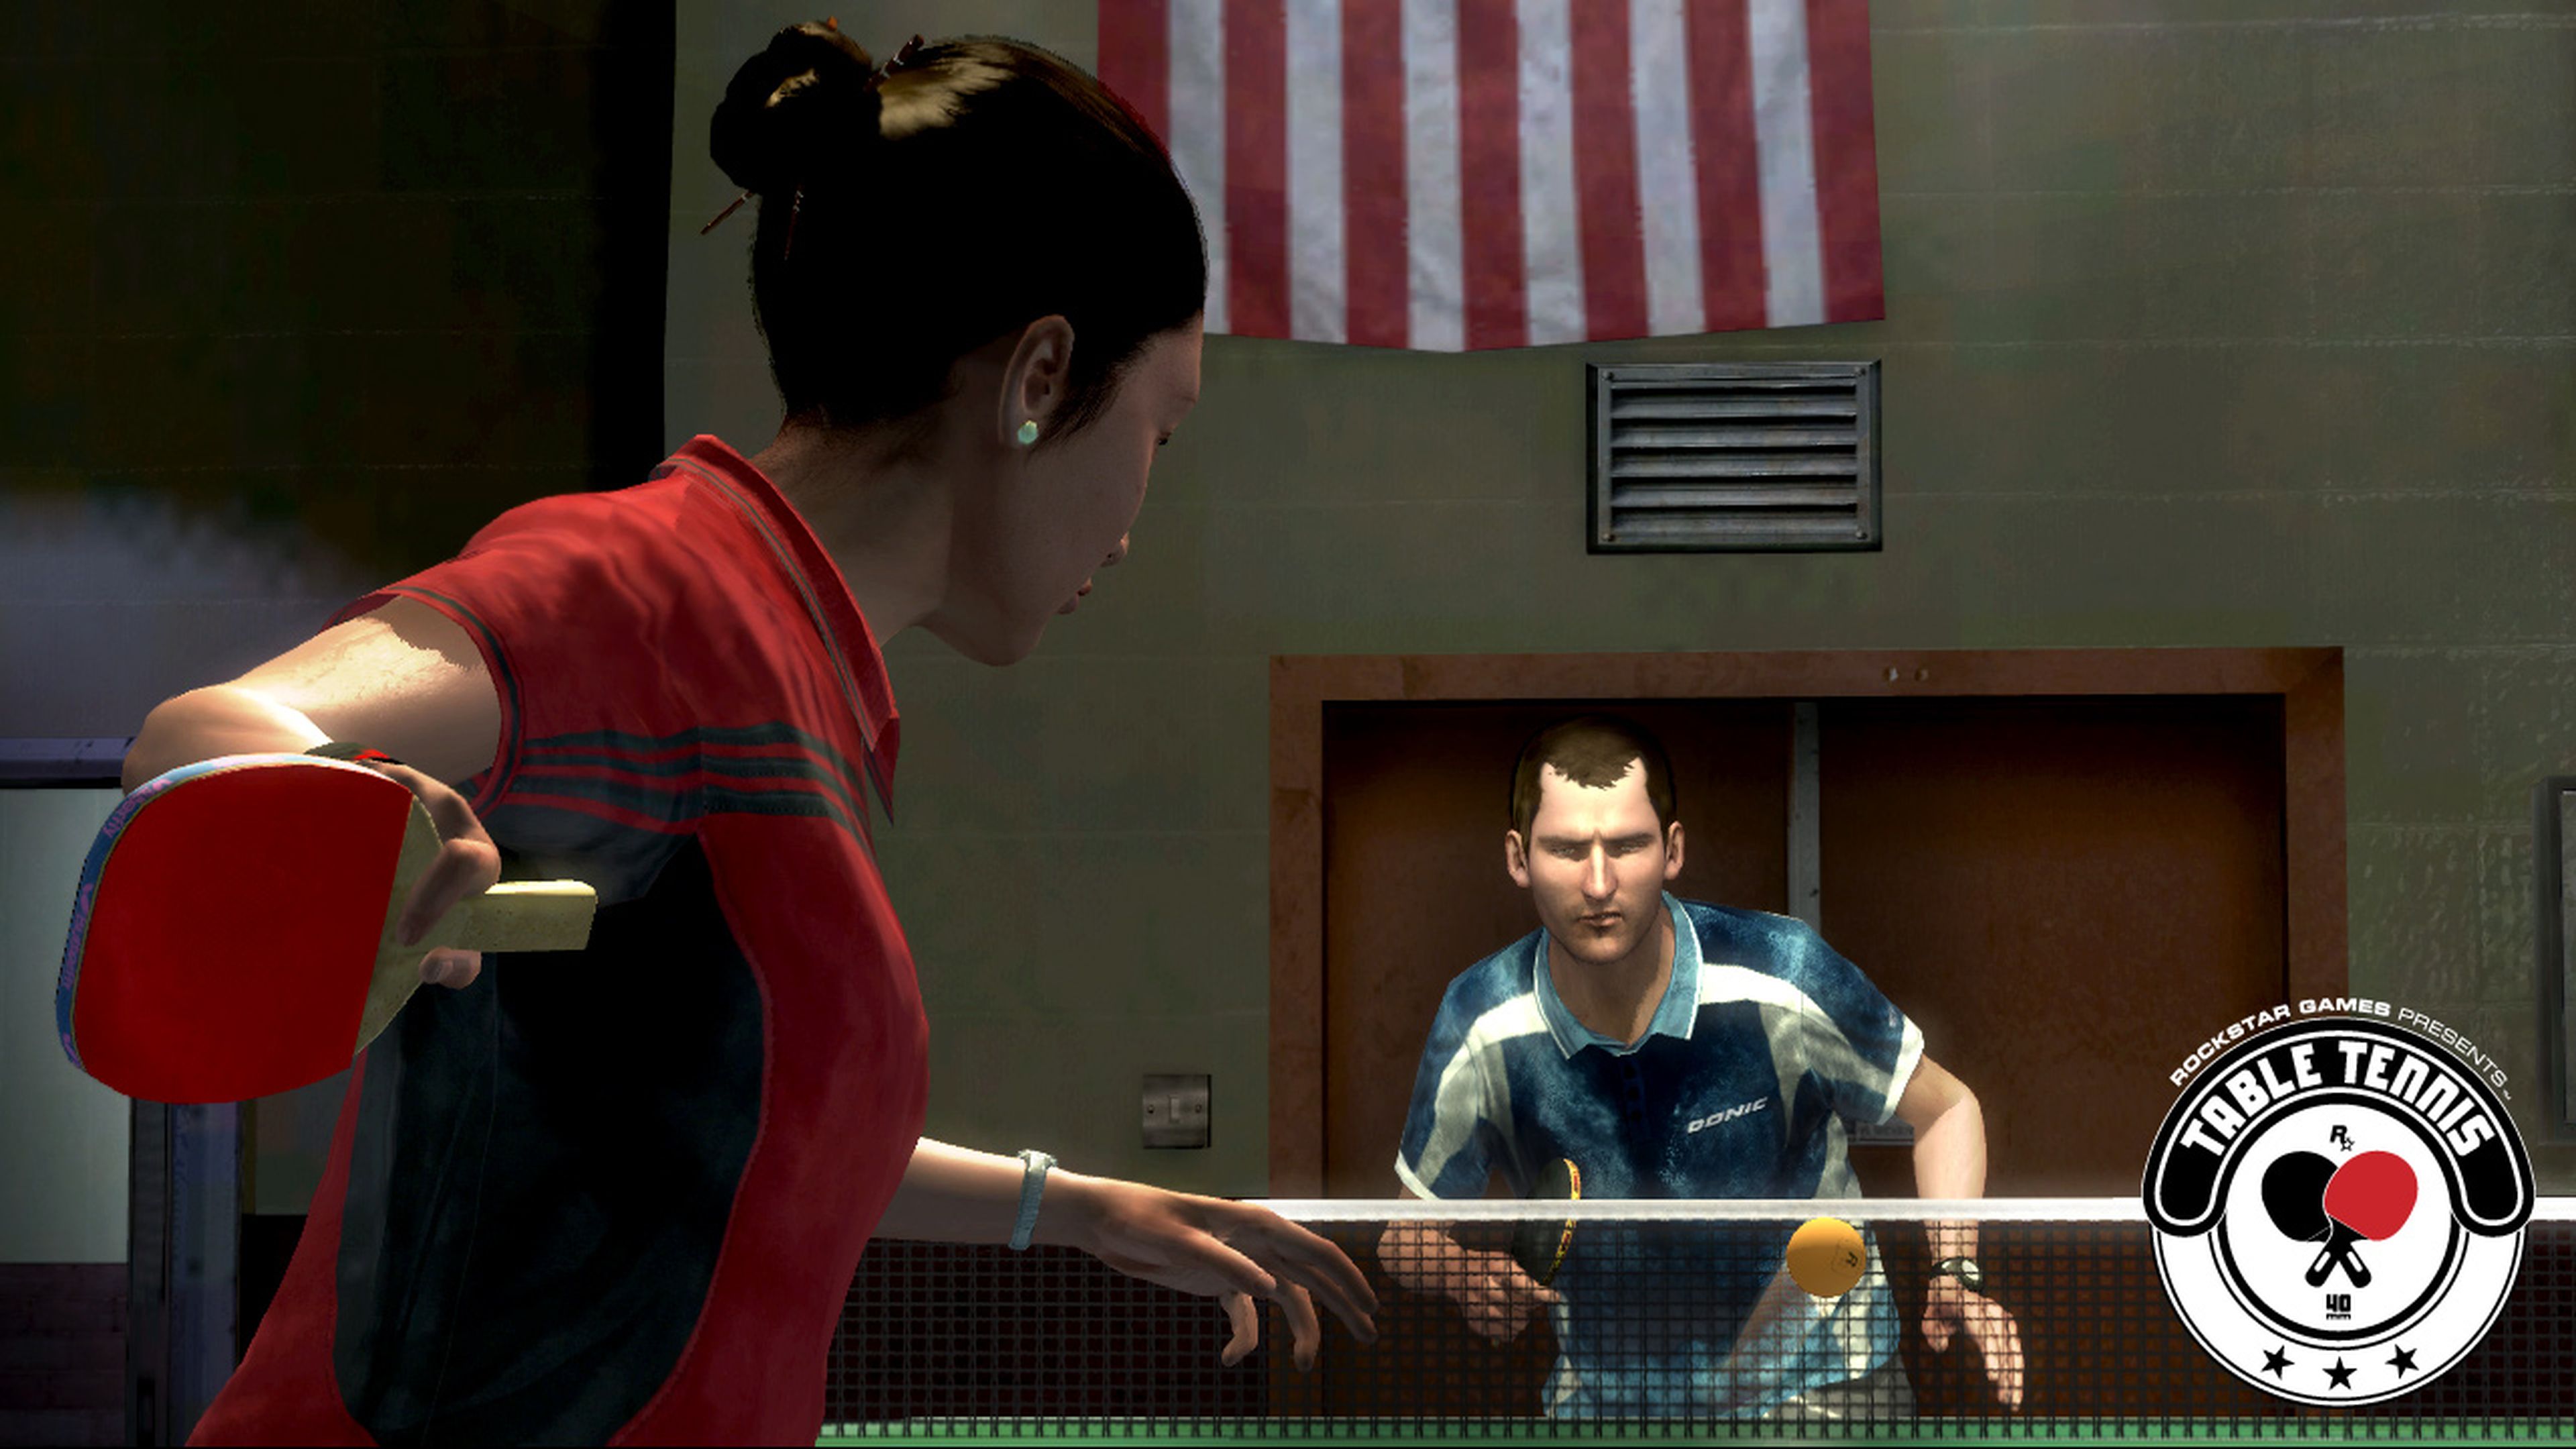 Должен поиграть. Rockstar Table Tennis. Rockstar Table Tennis Xbox 360. Rockstar games presents Table Tennis. Пинг понг игра компьютерная.